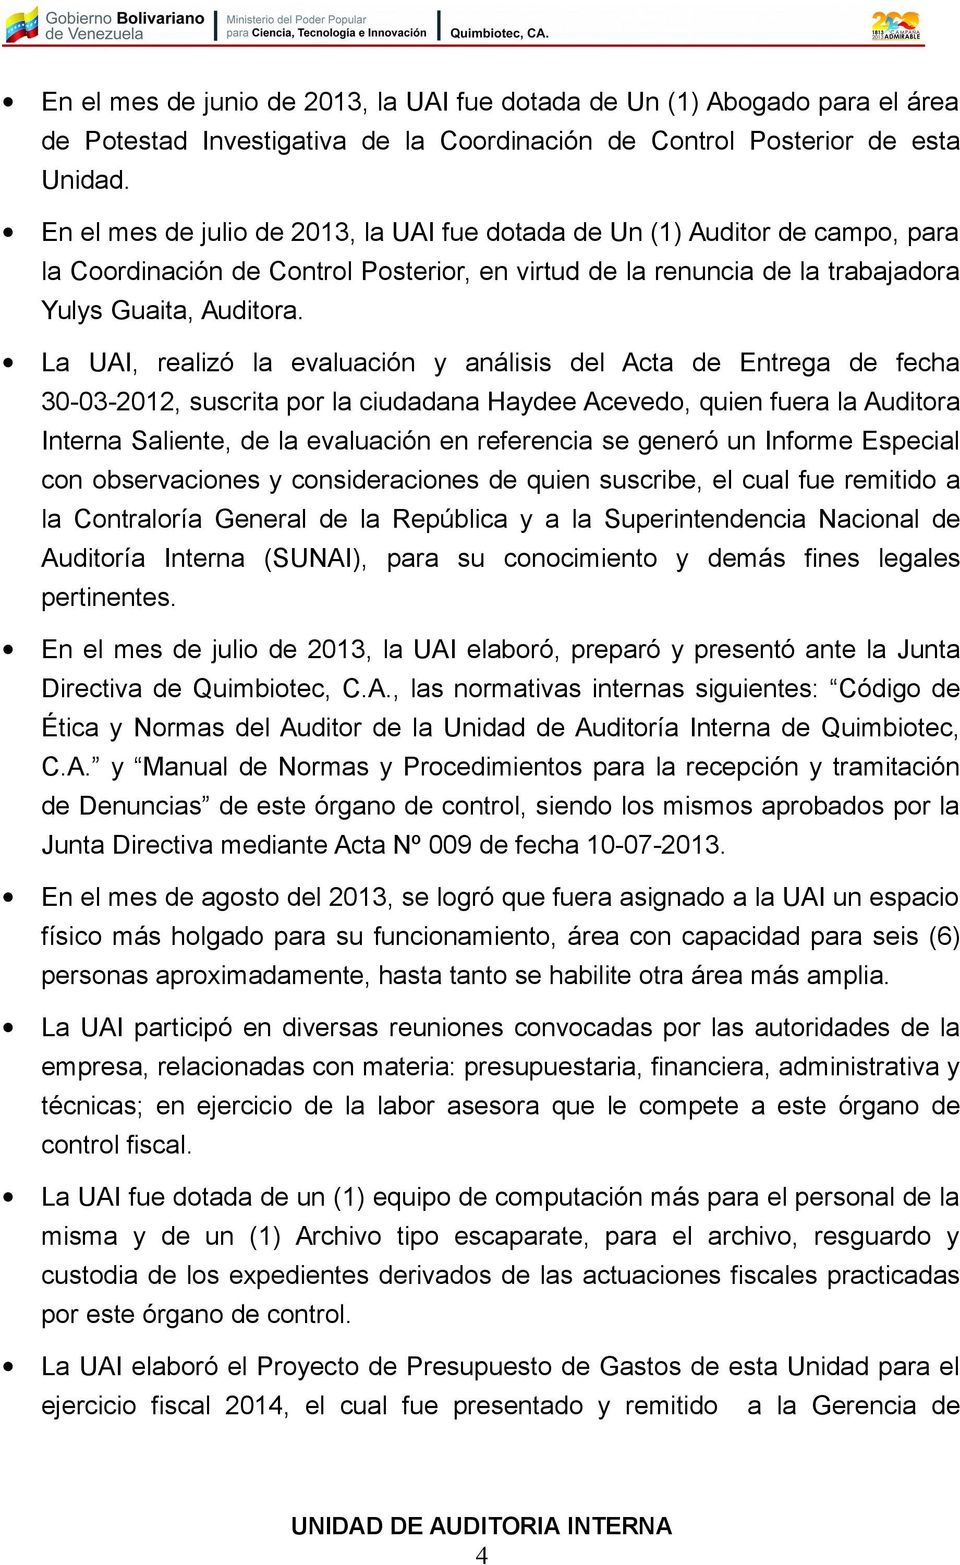 La UAI, realizó la evaluación y análisis del Acta de Entrega de fecha 30-03-2012, suscrita por la ciudadana Haydee Acevedo, quien fuera la Auditora Interna Saliente, de la evaluación en referencia se